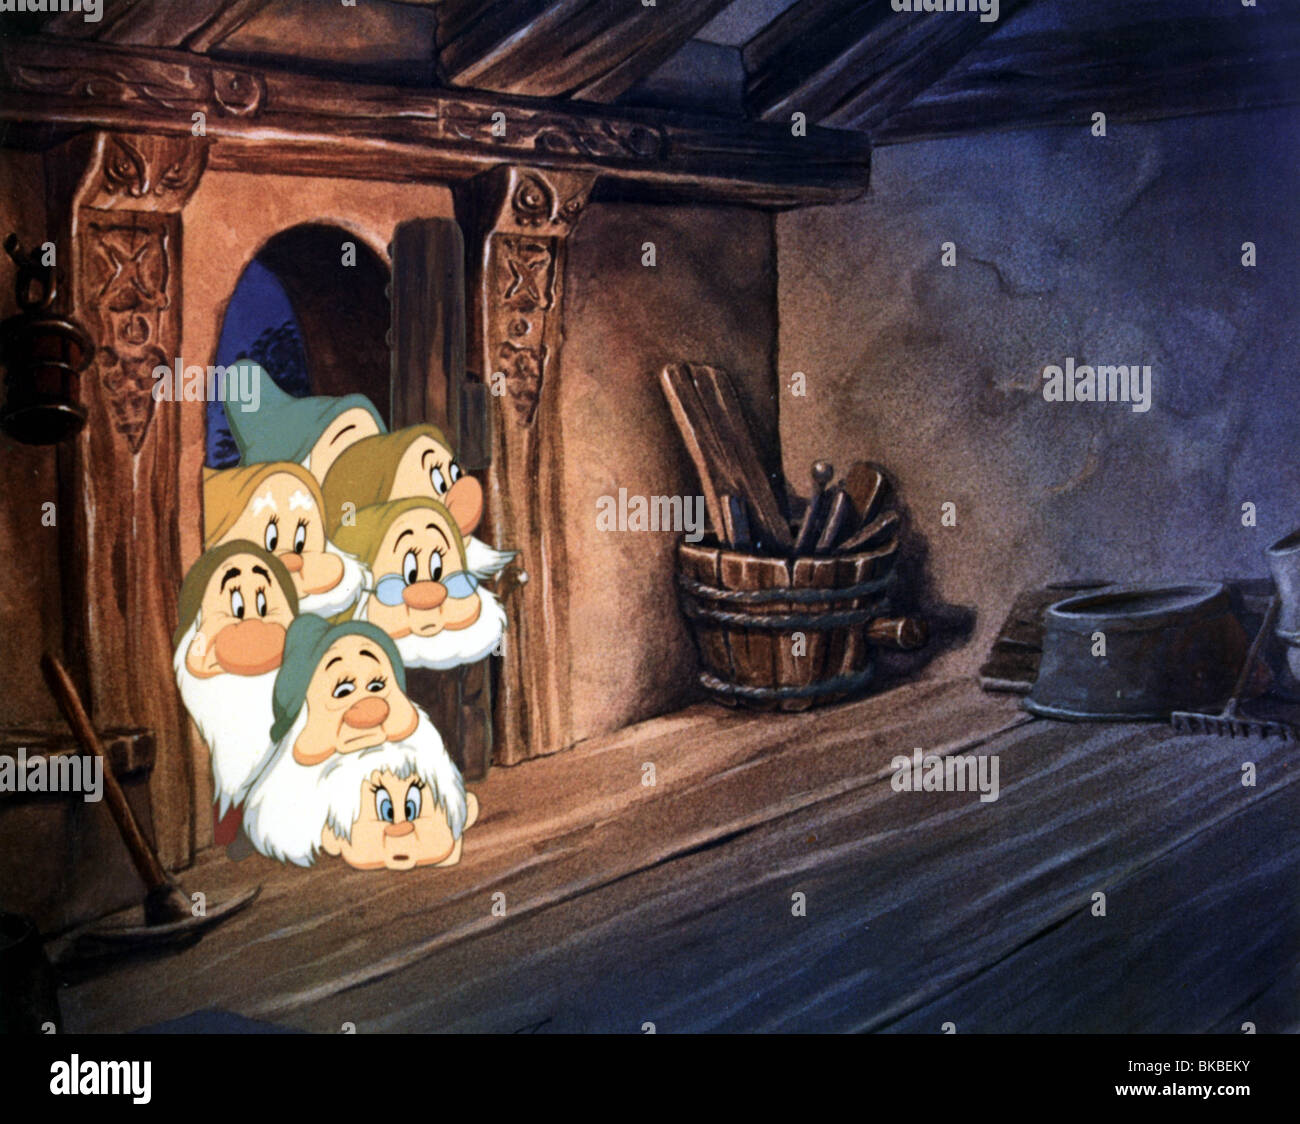 Snow White And The Seven Dwarfs Disney Stock Photos Snow White